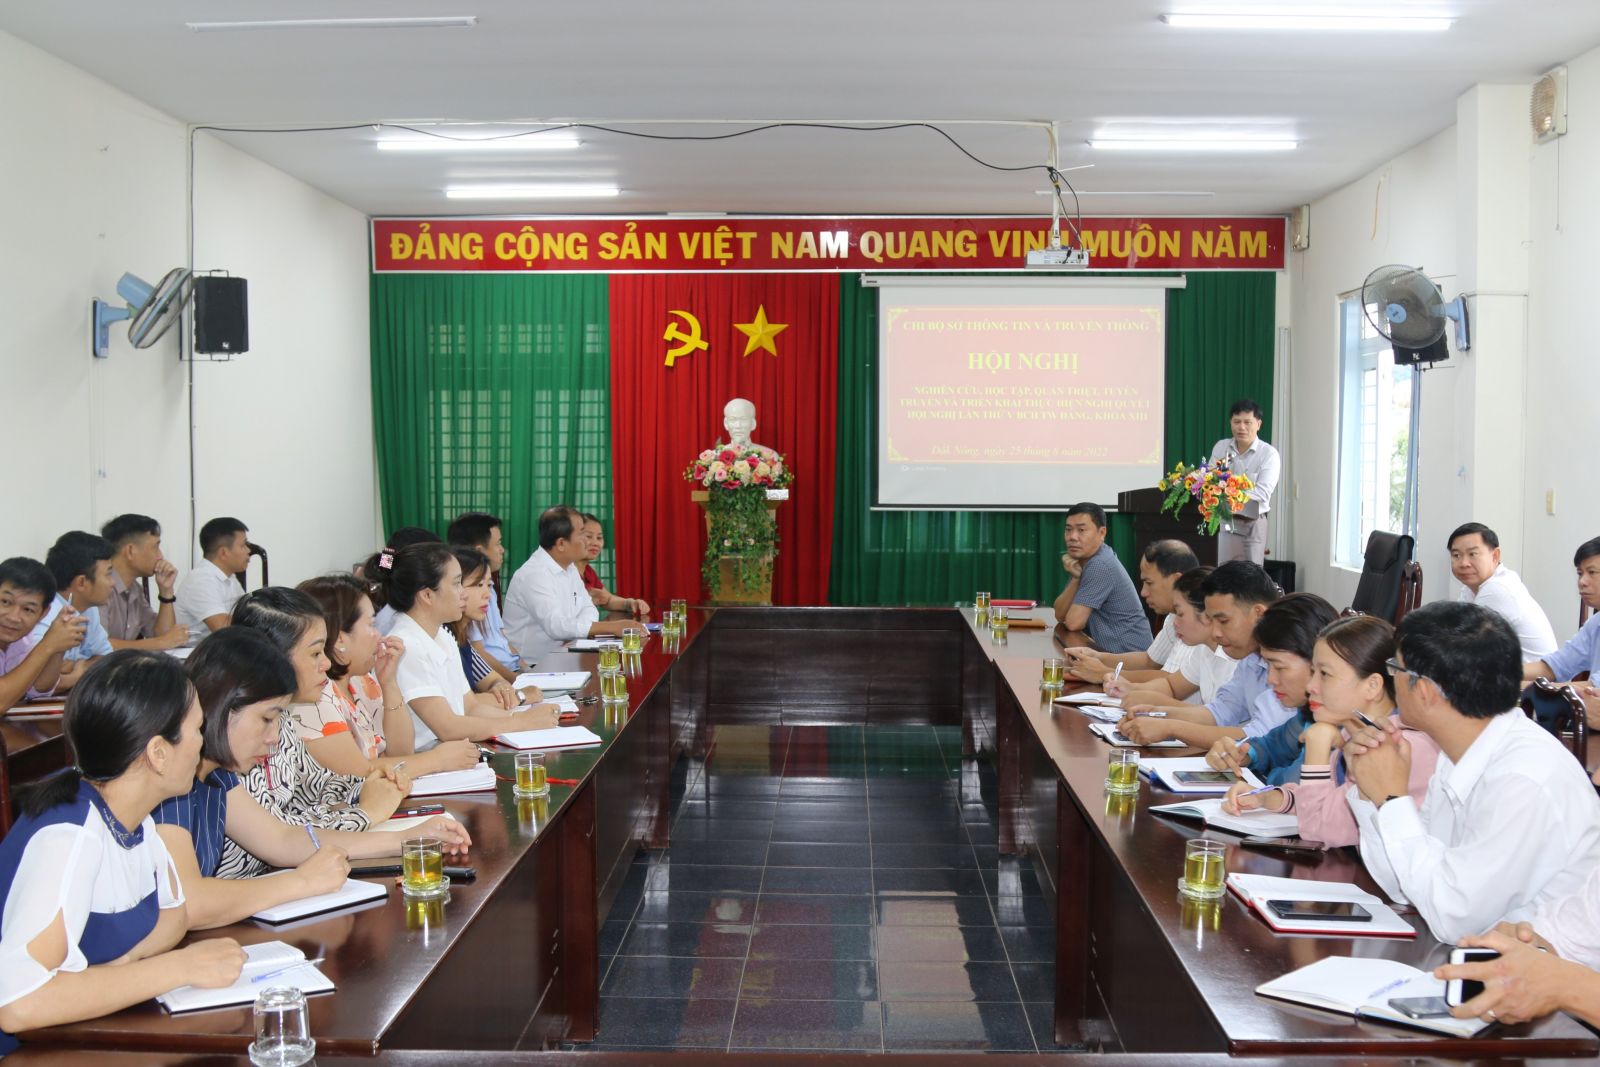 Chi bộ Sở Thông tin và Truyền thông tỉnh Đắk Nông tổ chức Hội nghị học tập, quán triệt và triển khai thực hiện Nghị quyết Hội nghị Trung ương 5, khóa XIII